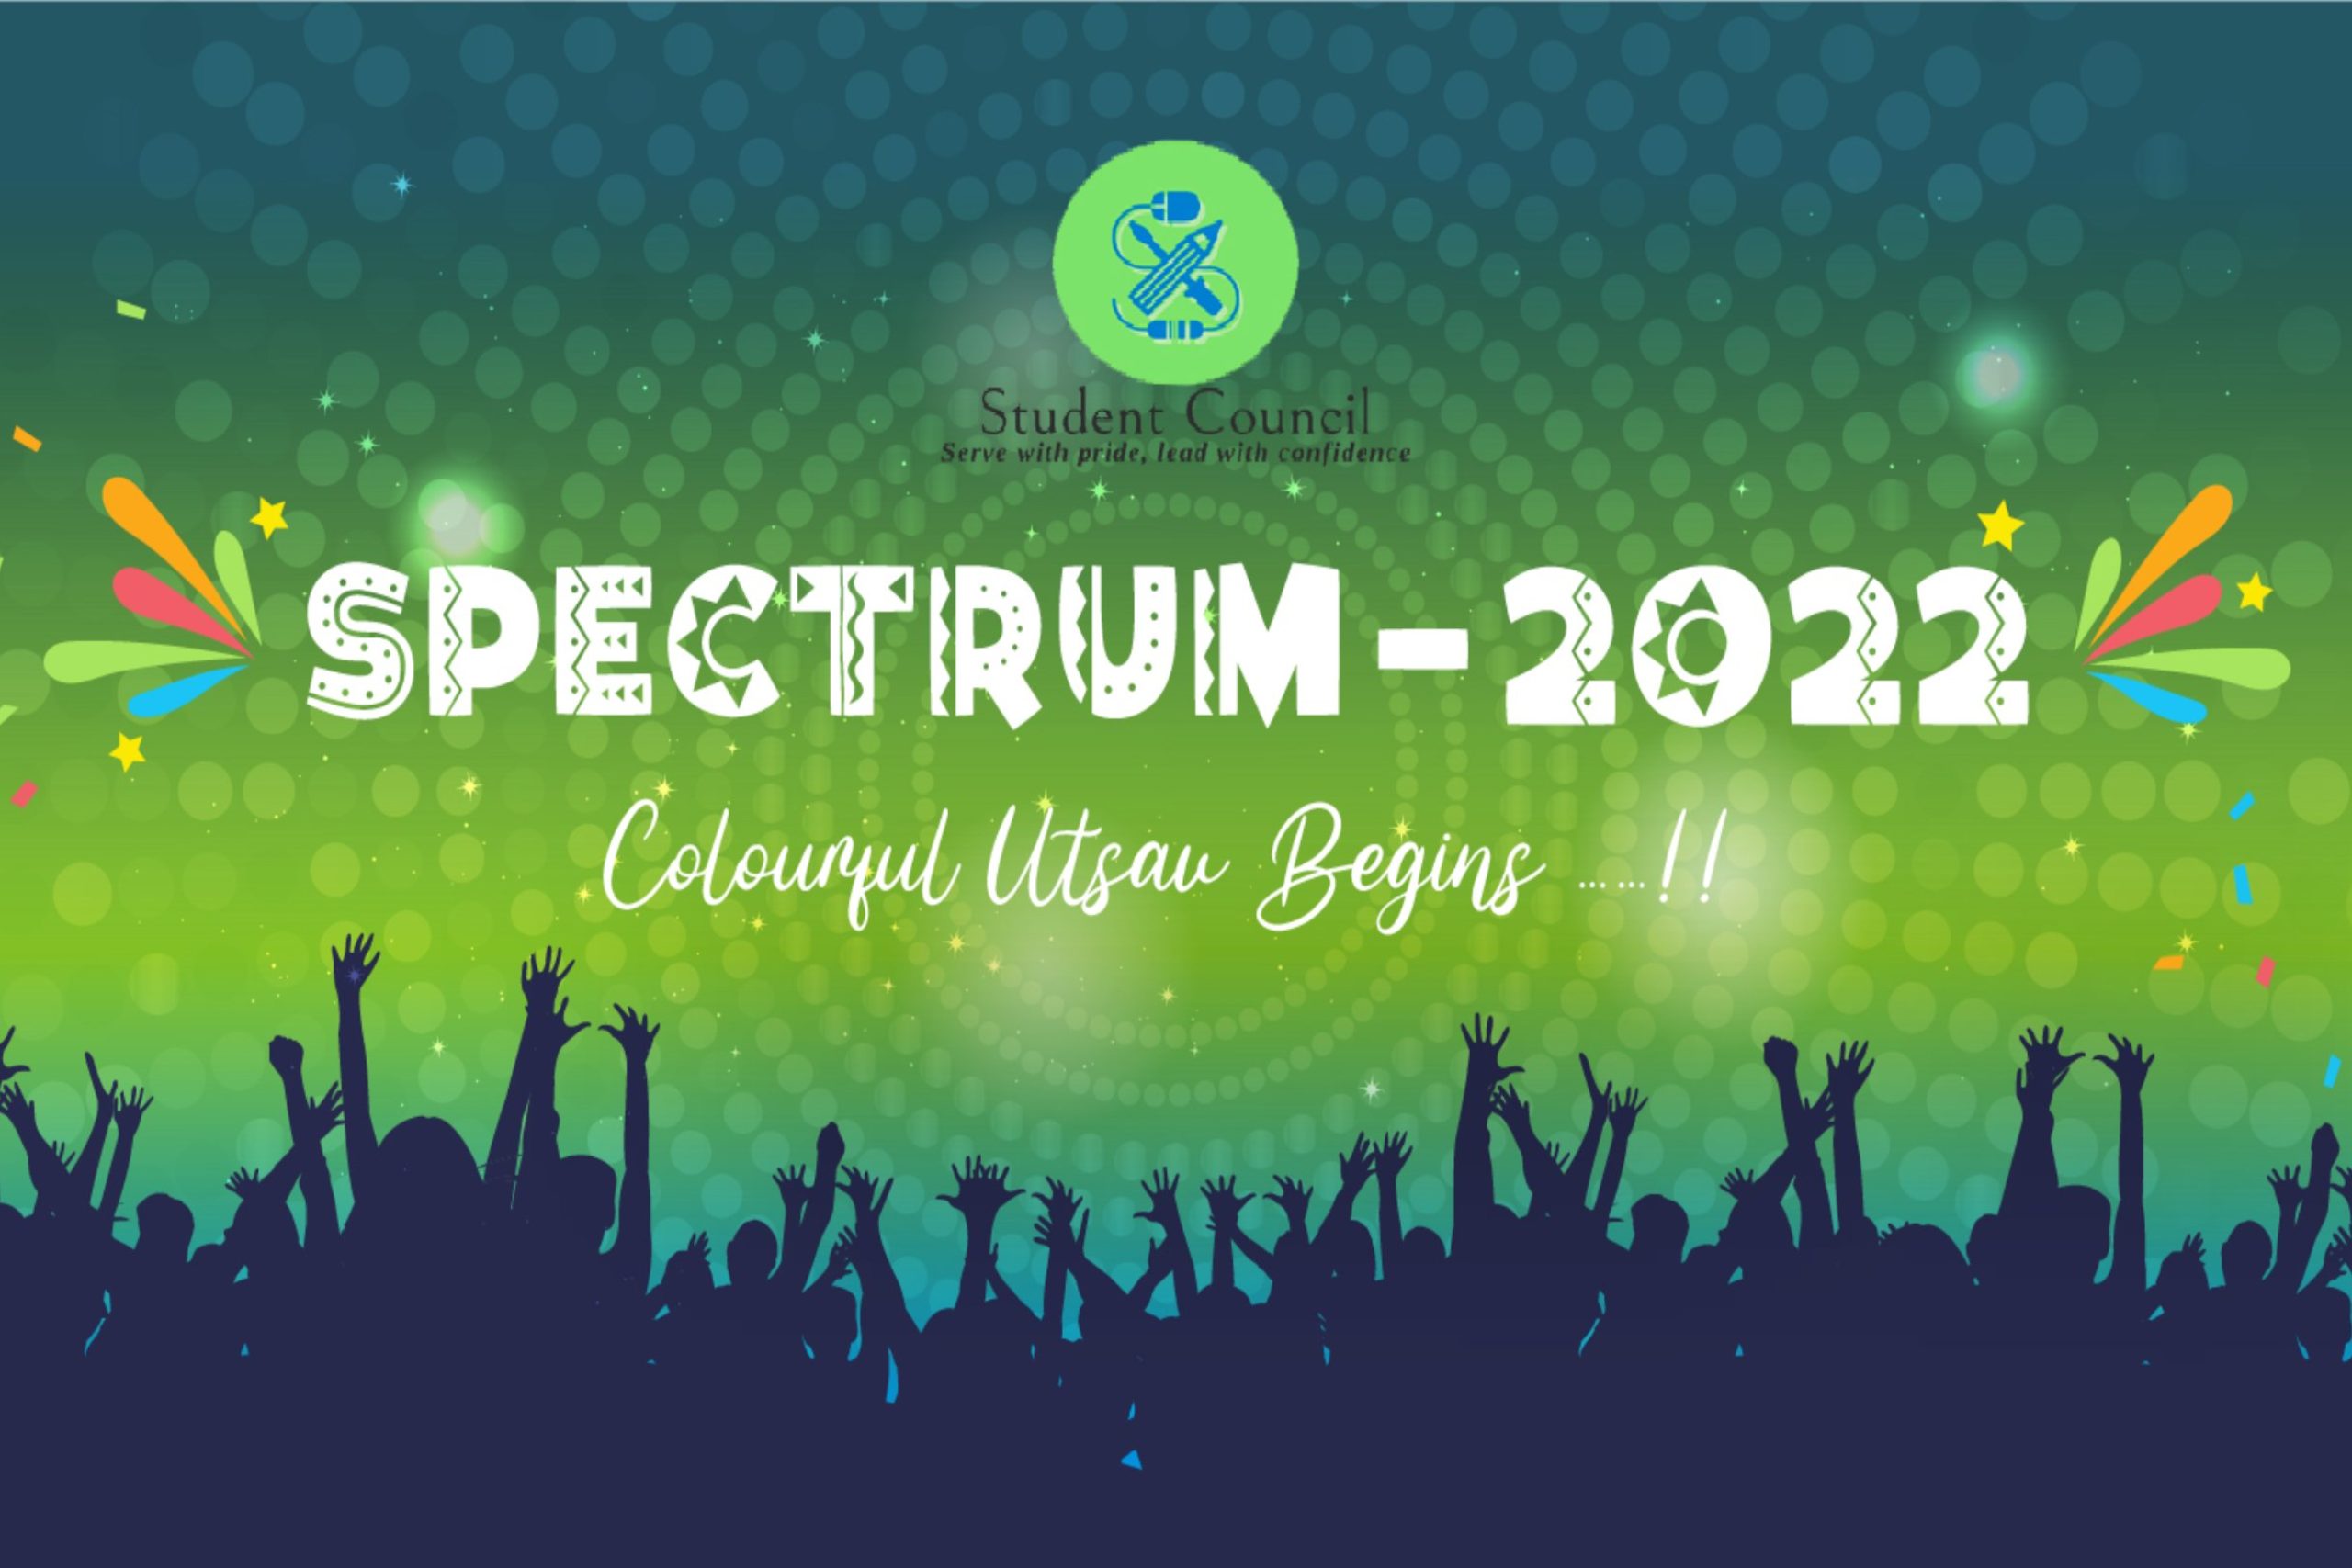 Spectrum – 2022